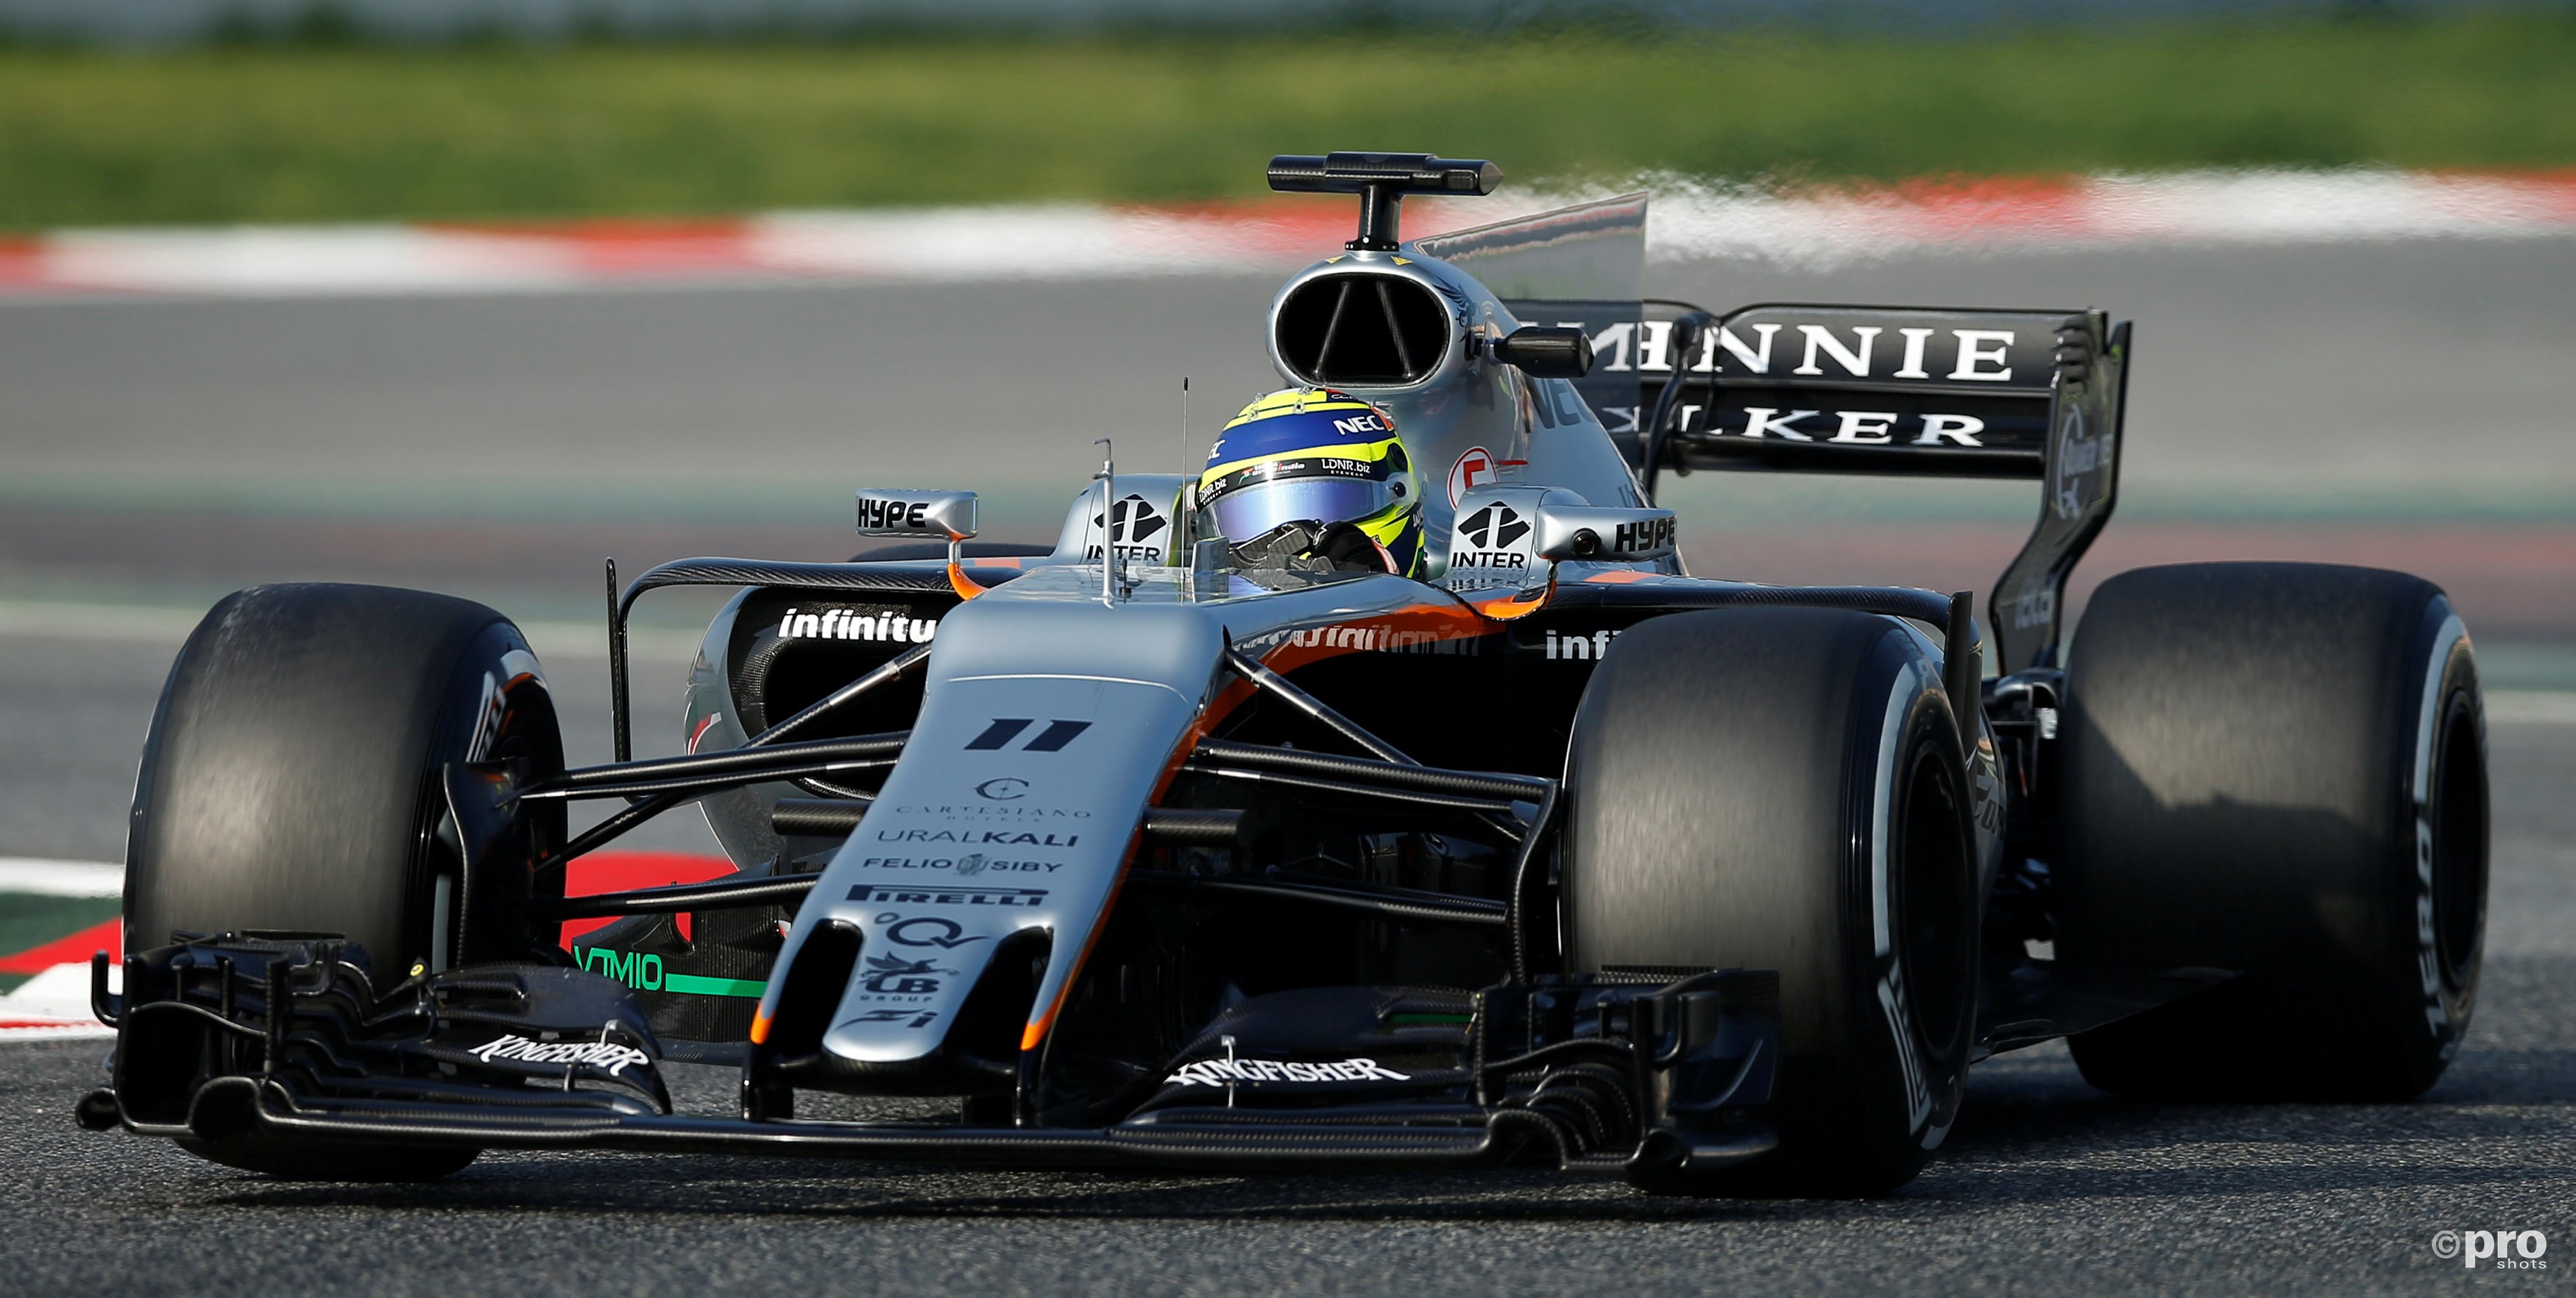 Rijdt Sergio Perez binnenkort in een knalroze Force India? (Pro Shots/Action Images)